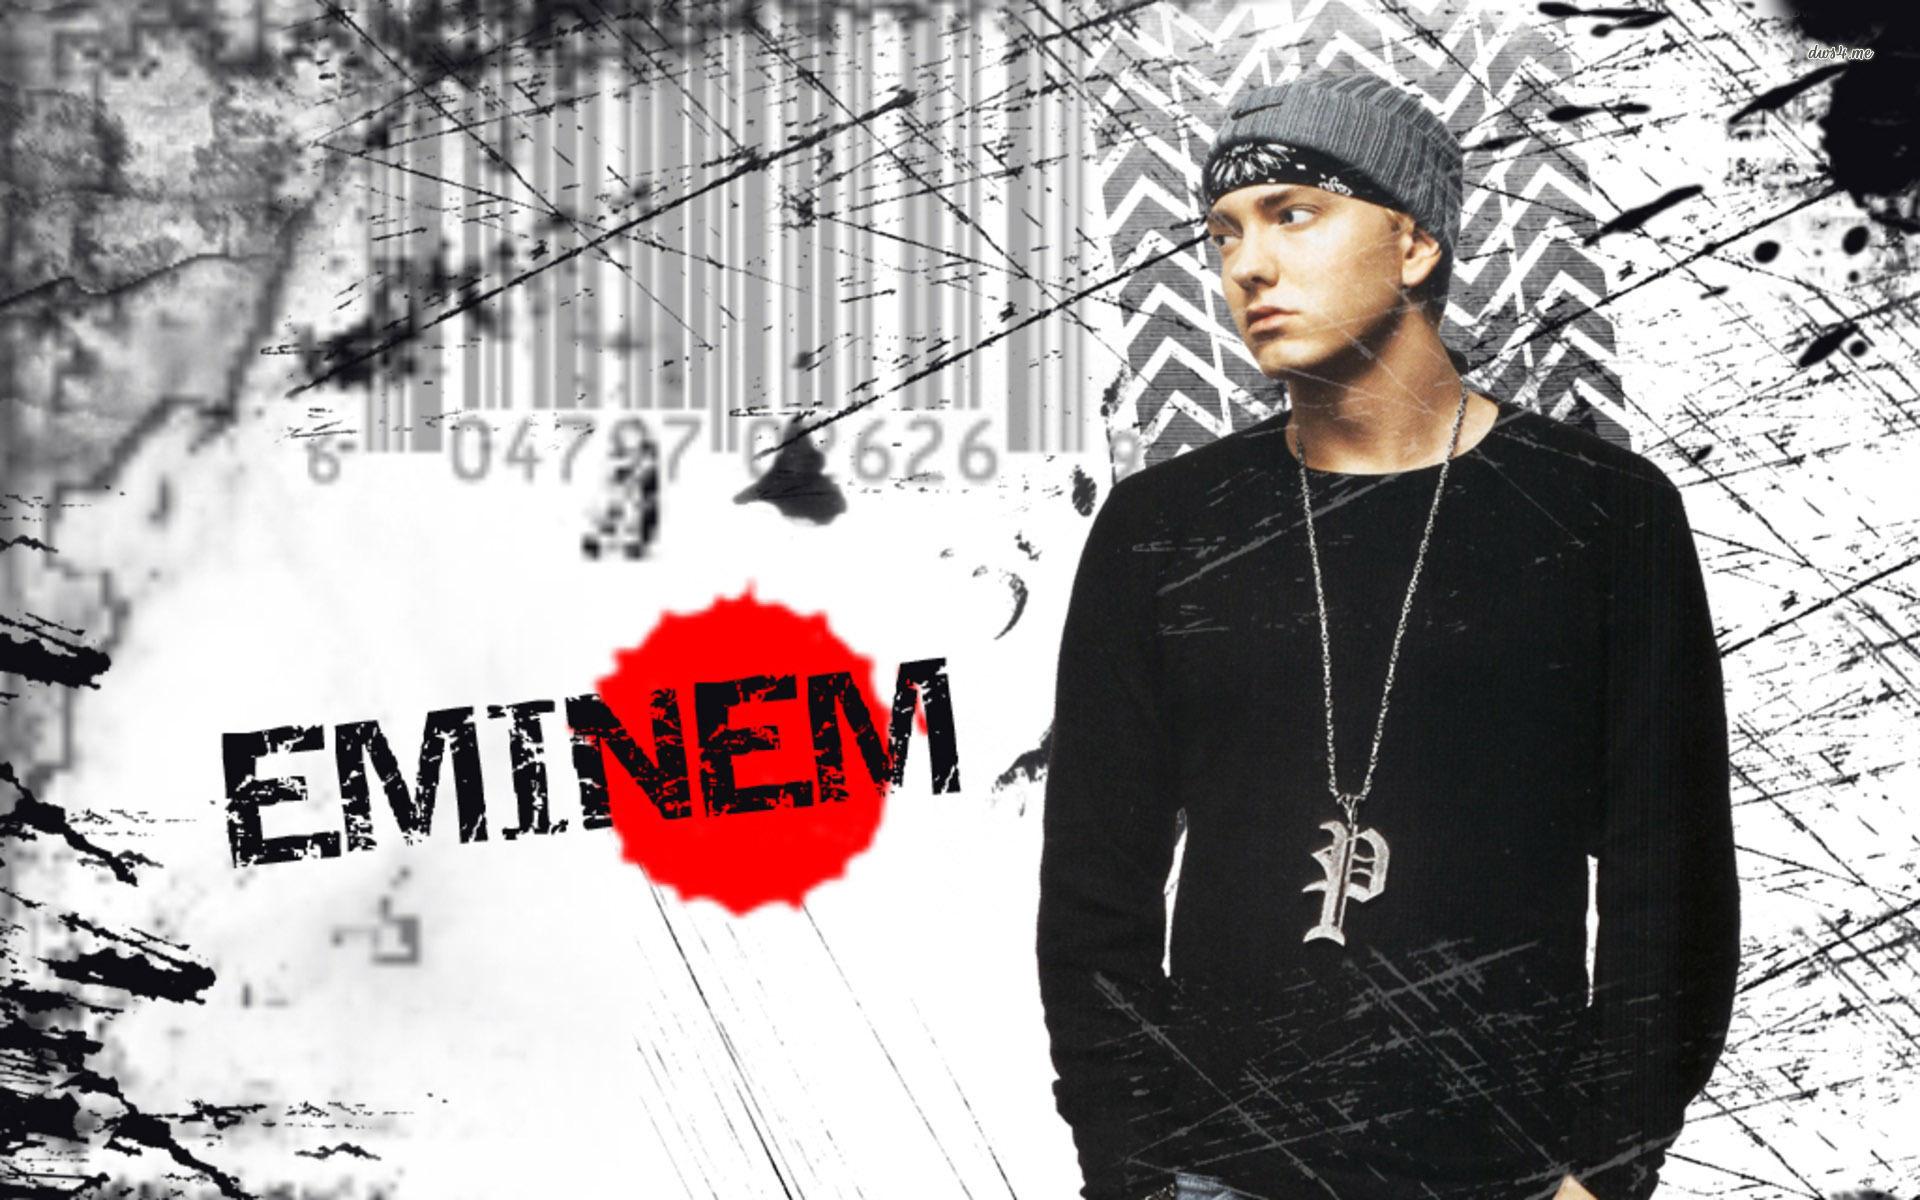 Eminem HD wallpaper. HD Latest Wallpaper